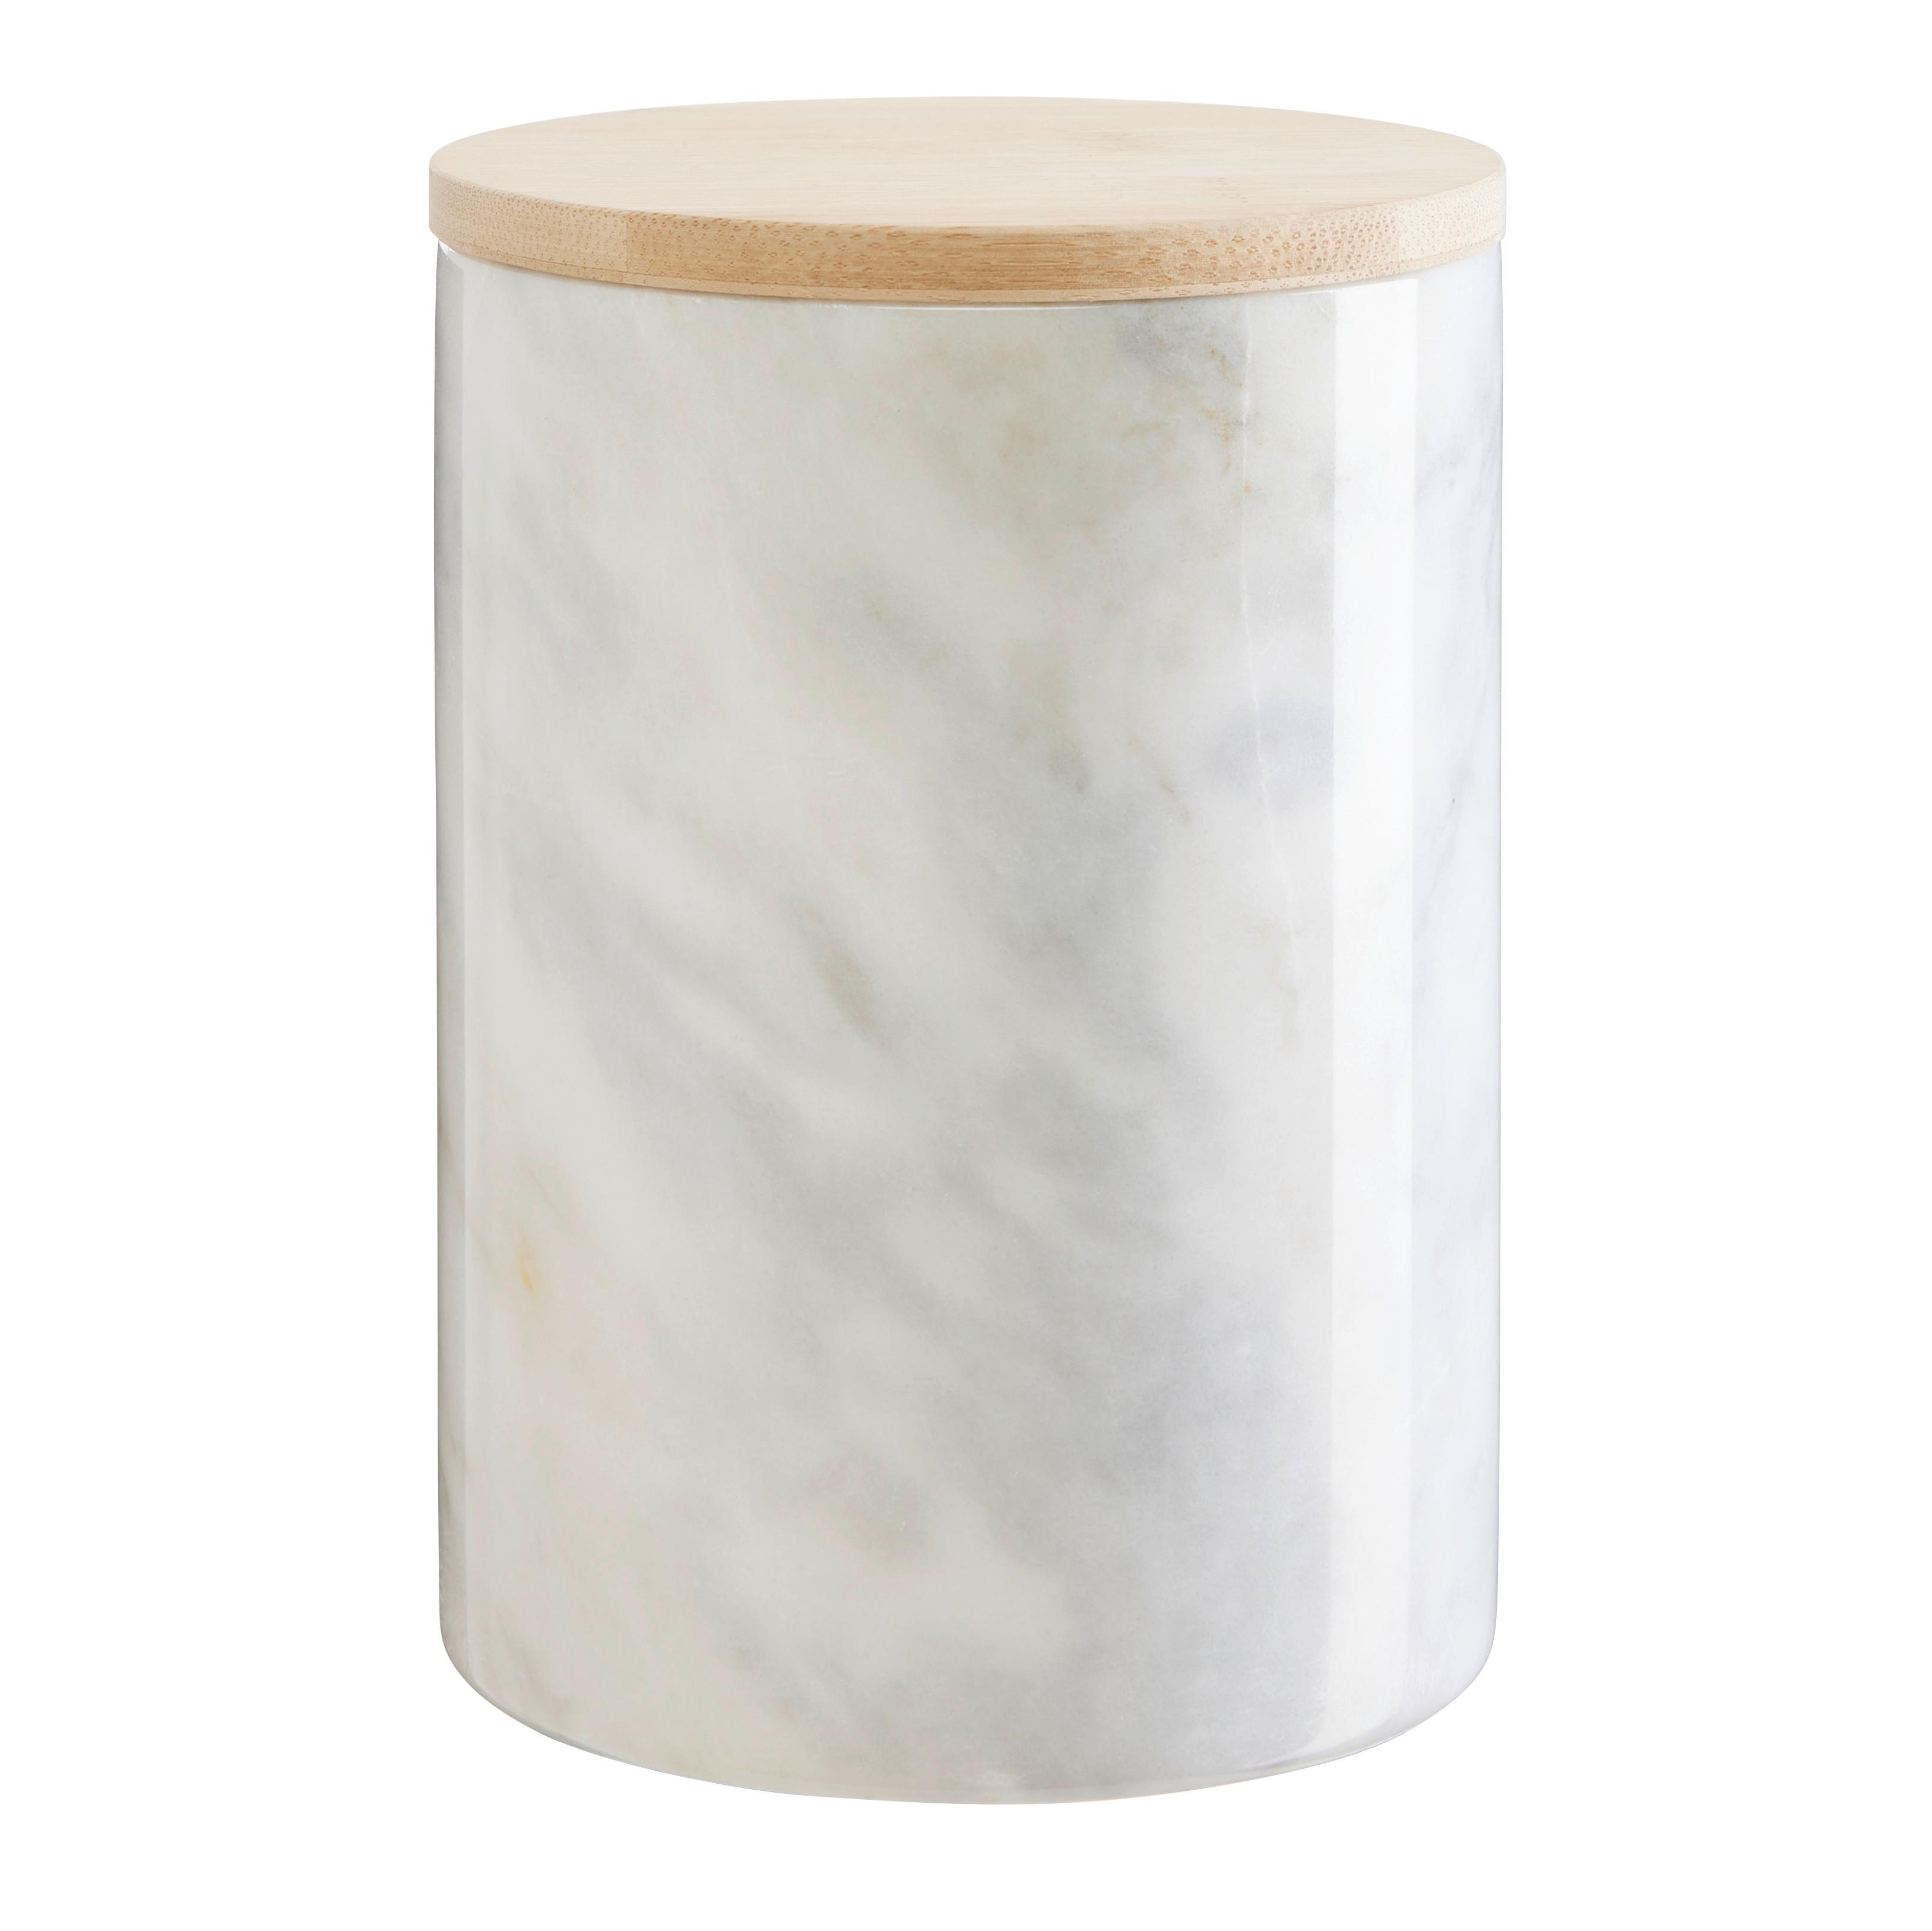 Vorratsdose Marble L in Weiß ca. 1l - Weiß, MODERN, Holz/Kunststoff (12/16cm) - Premium Living